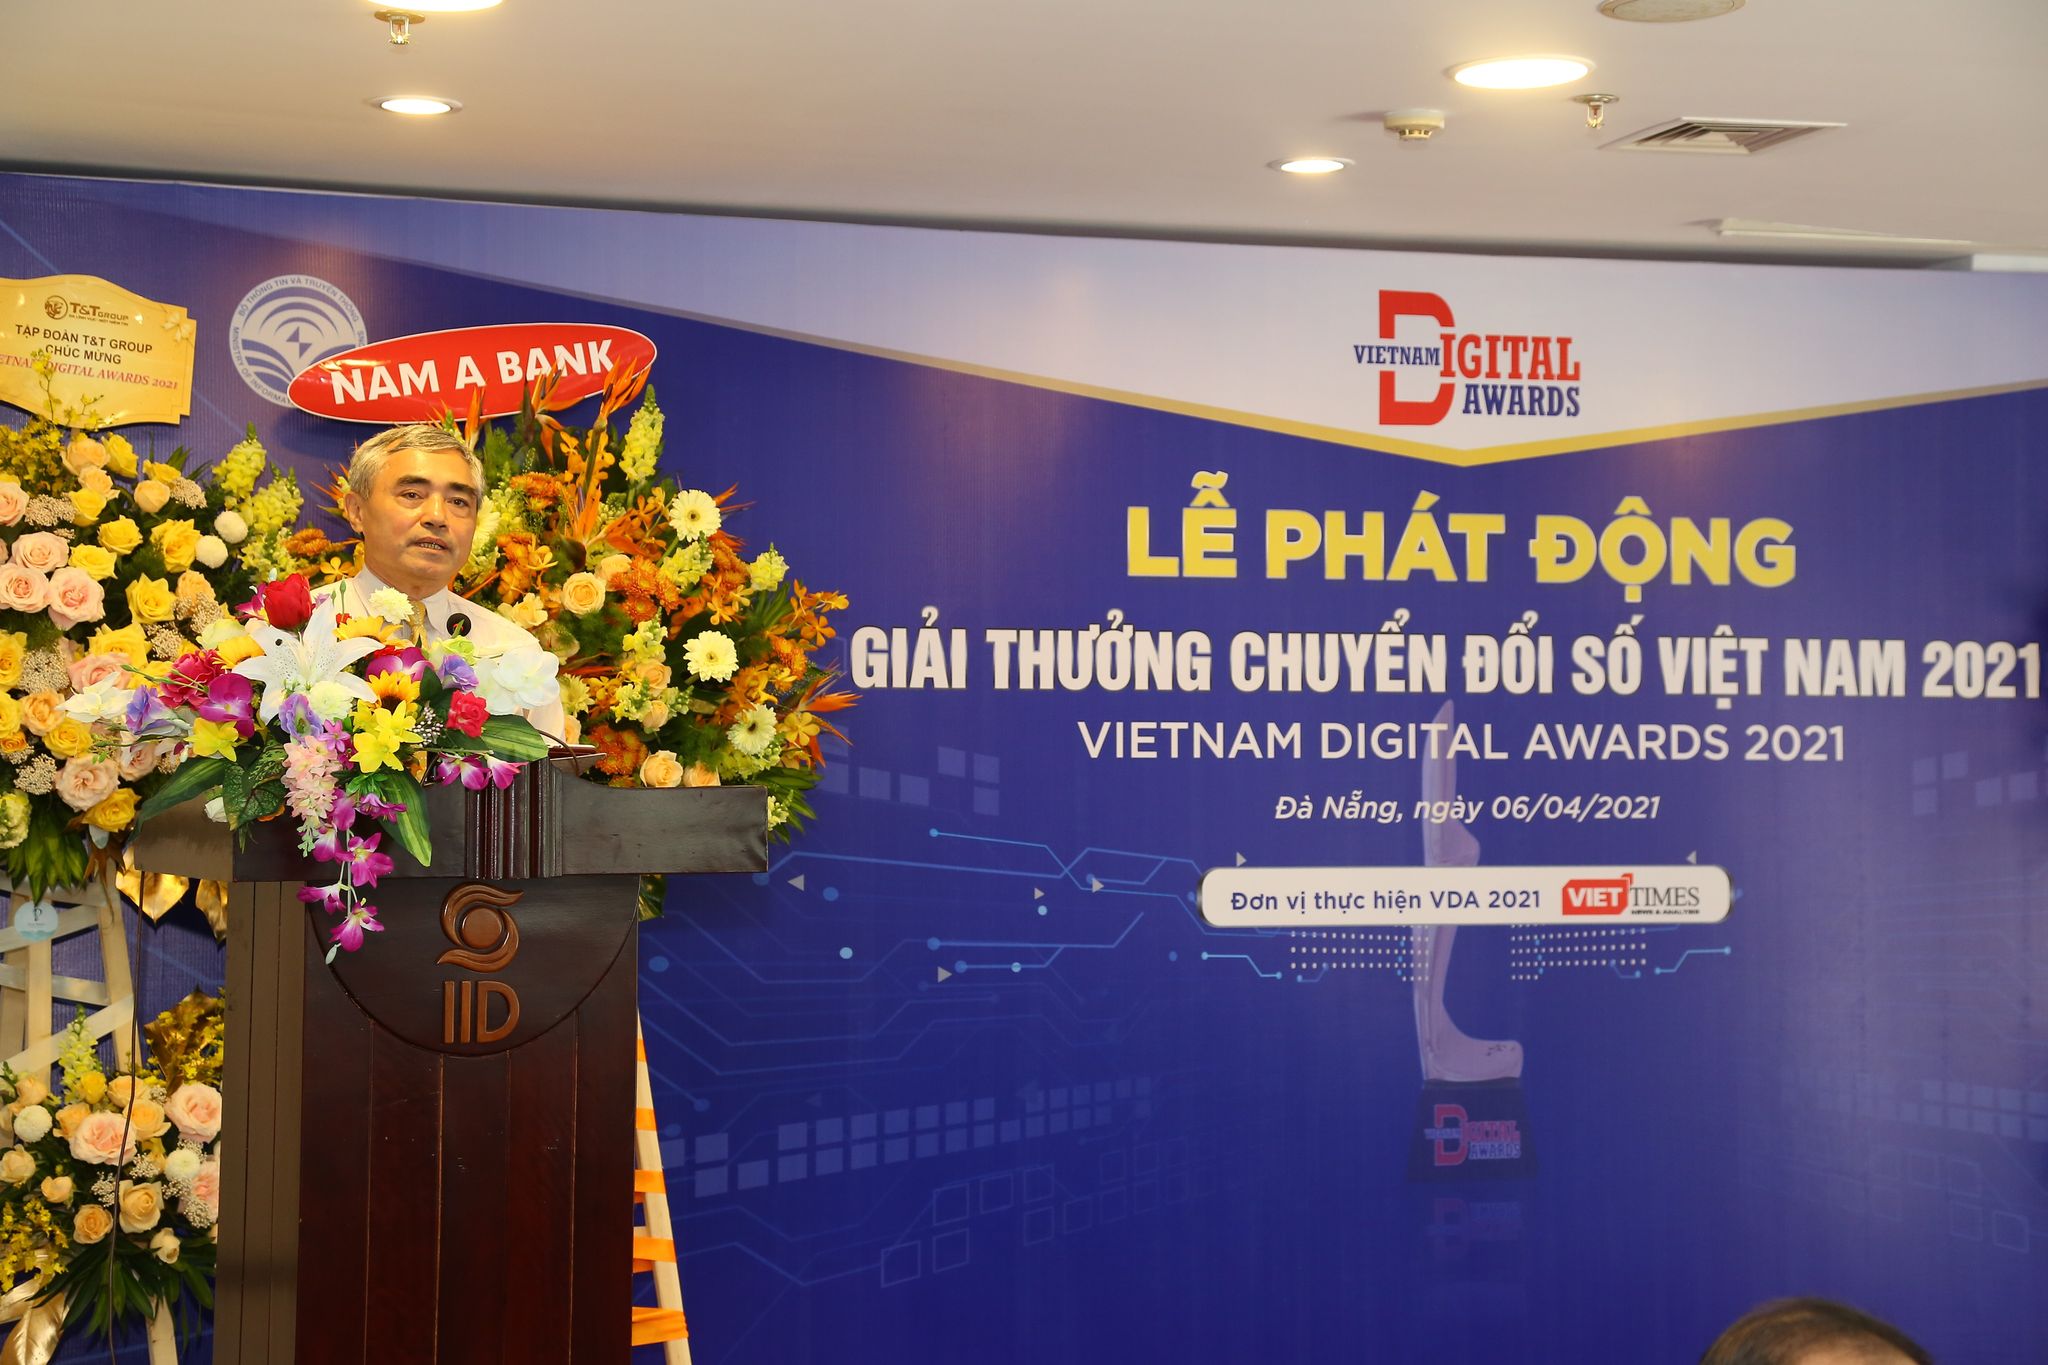 Phát động giải thưởng Chuyển đổi số Việt Nam năm 2021 - Ảnh 2.